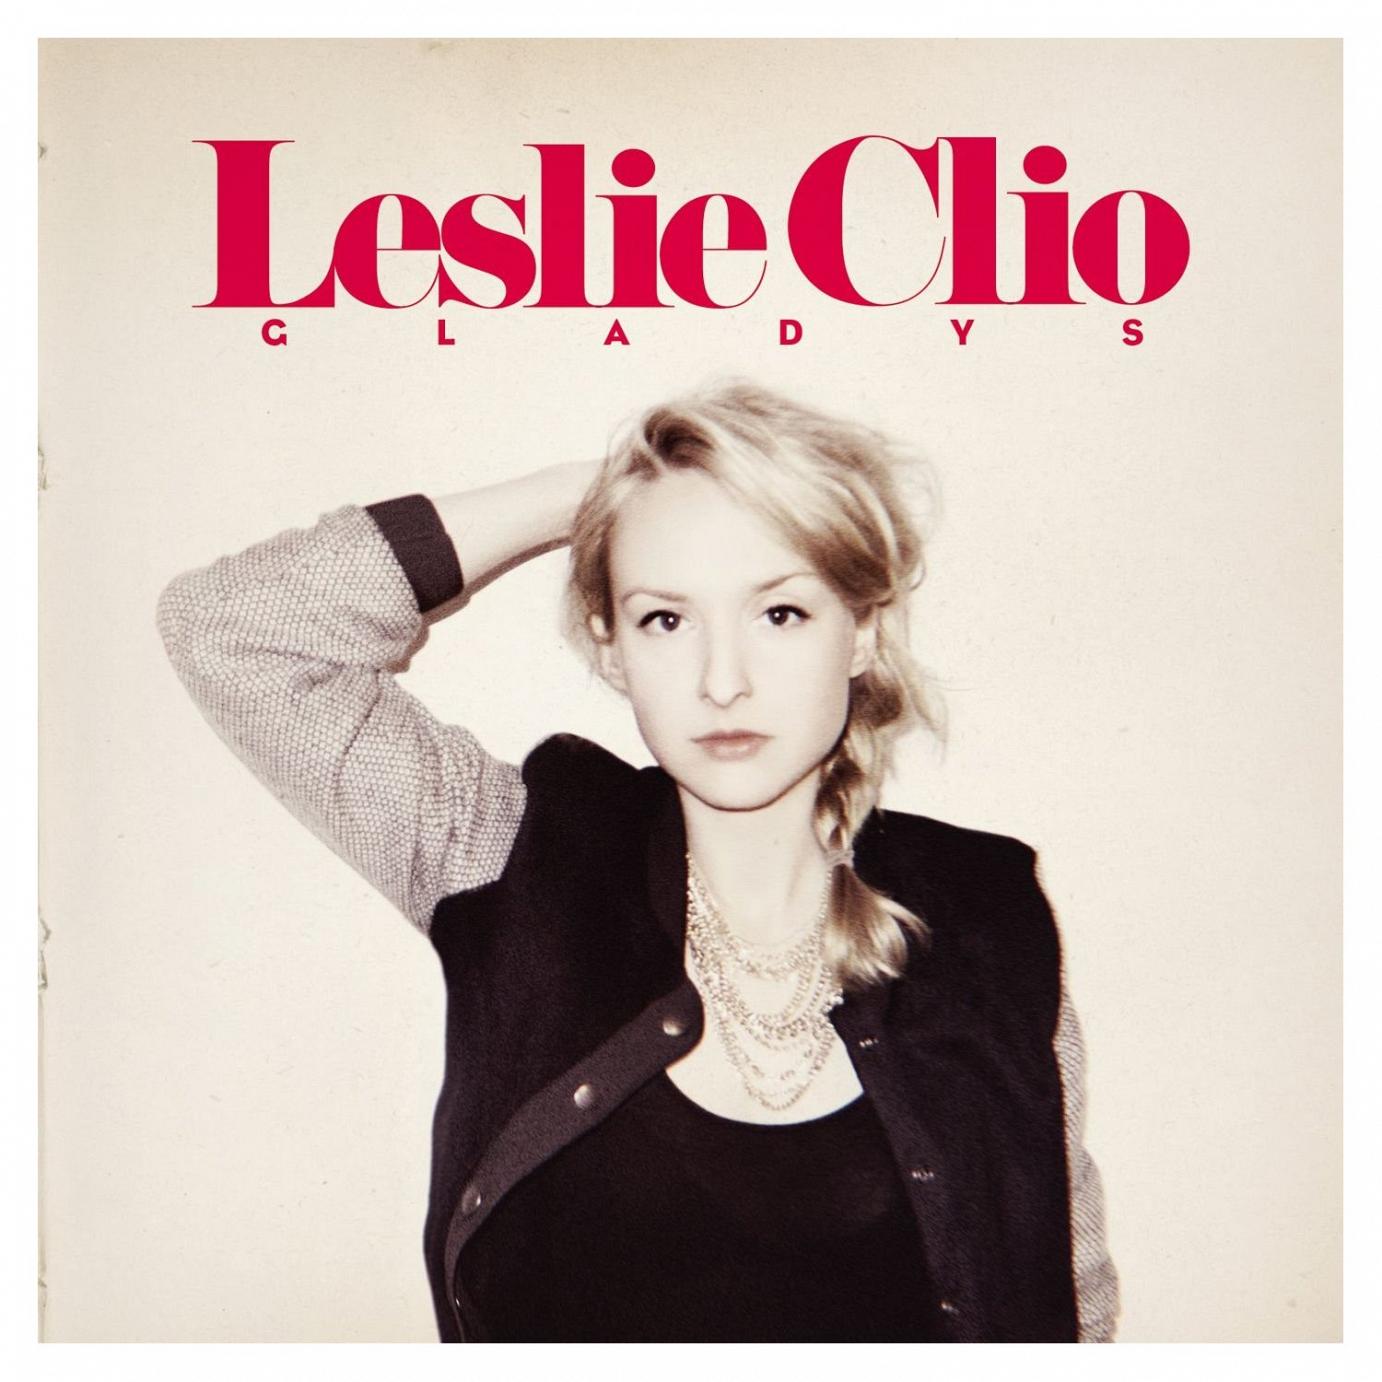 Leslie Clio mischt mit ihrem Debüt “Gladys” die deutsche Poplandschaft auf